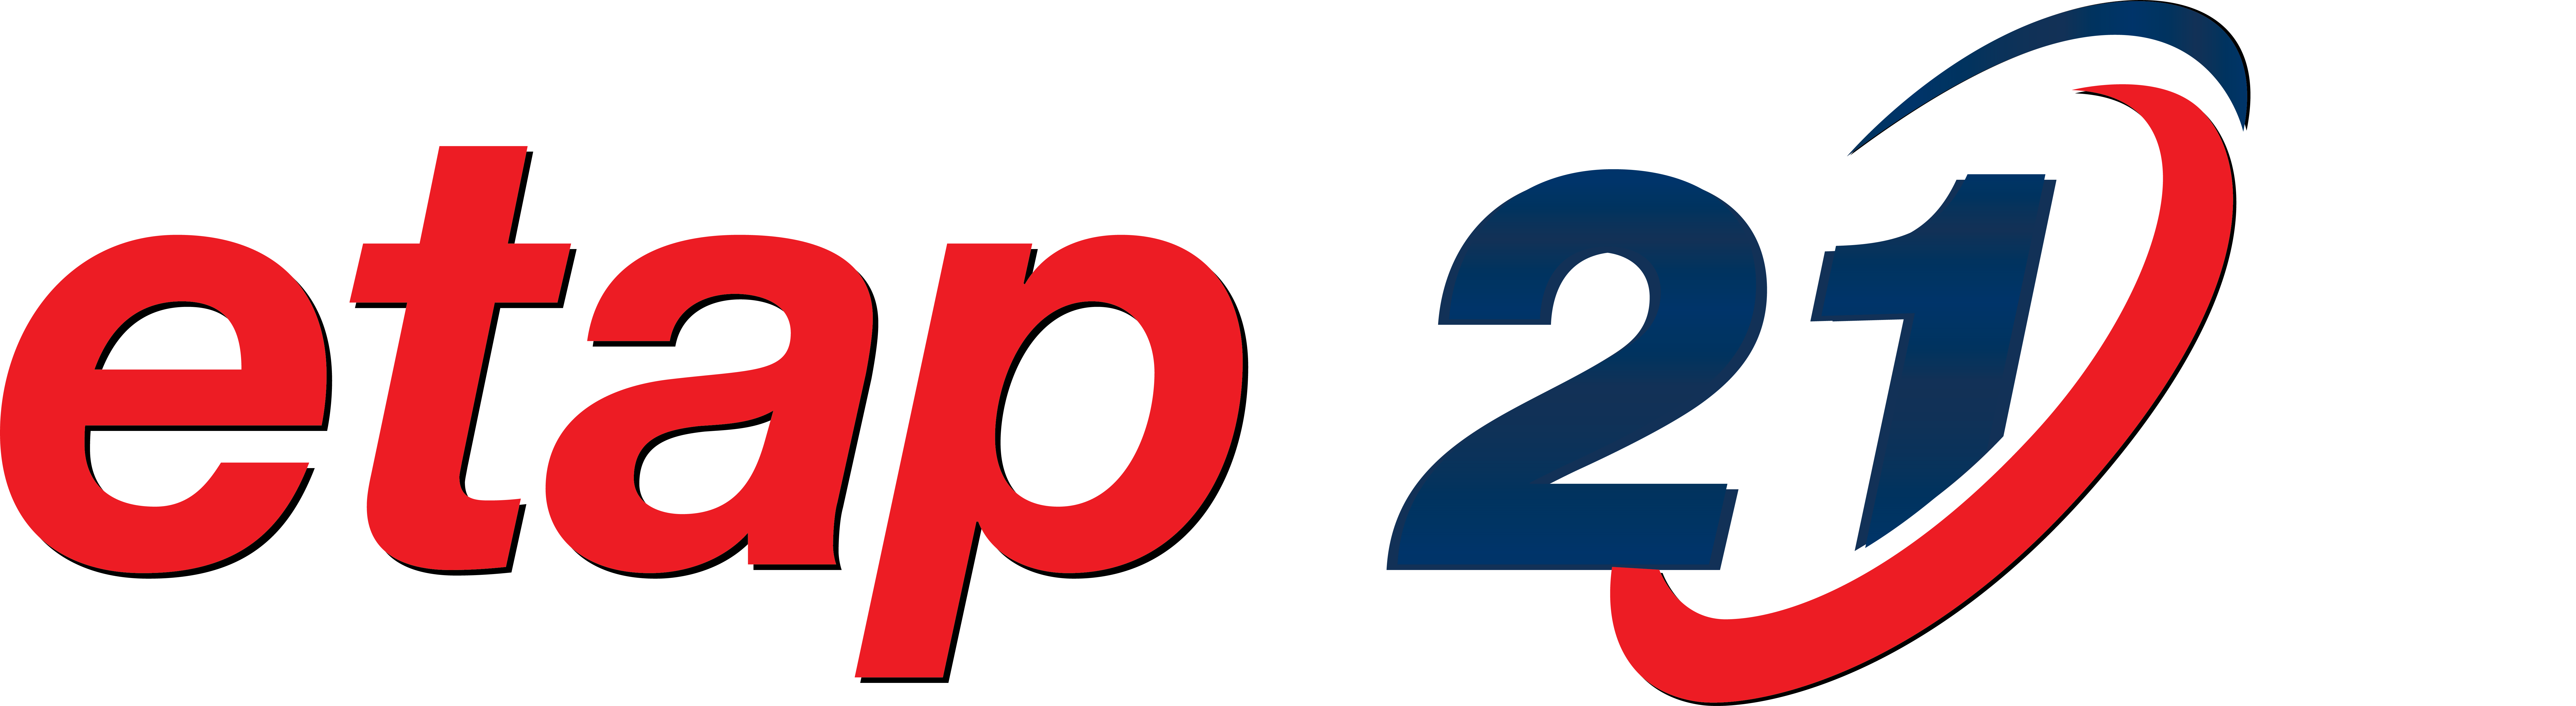 etap-21.0-logo